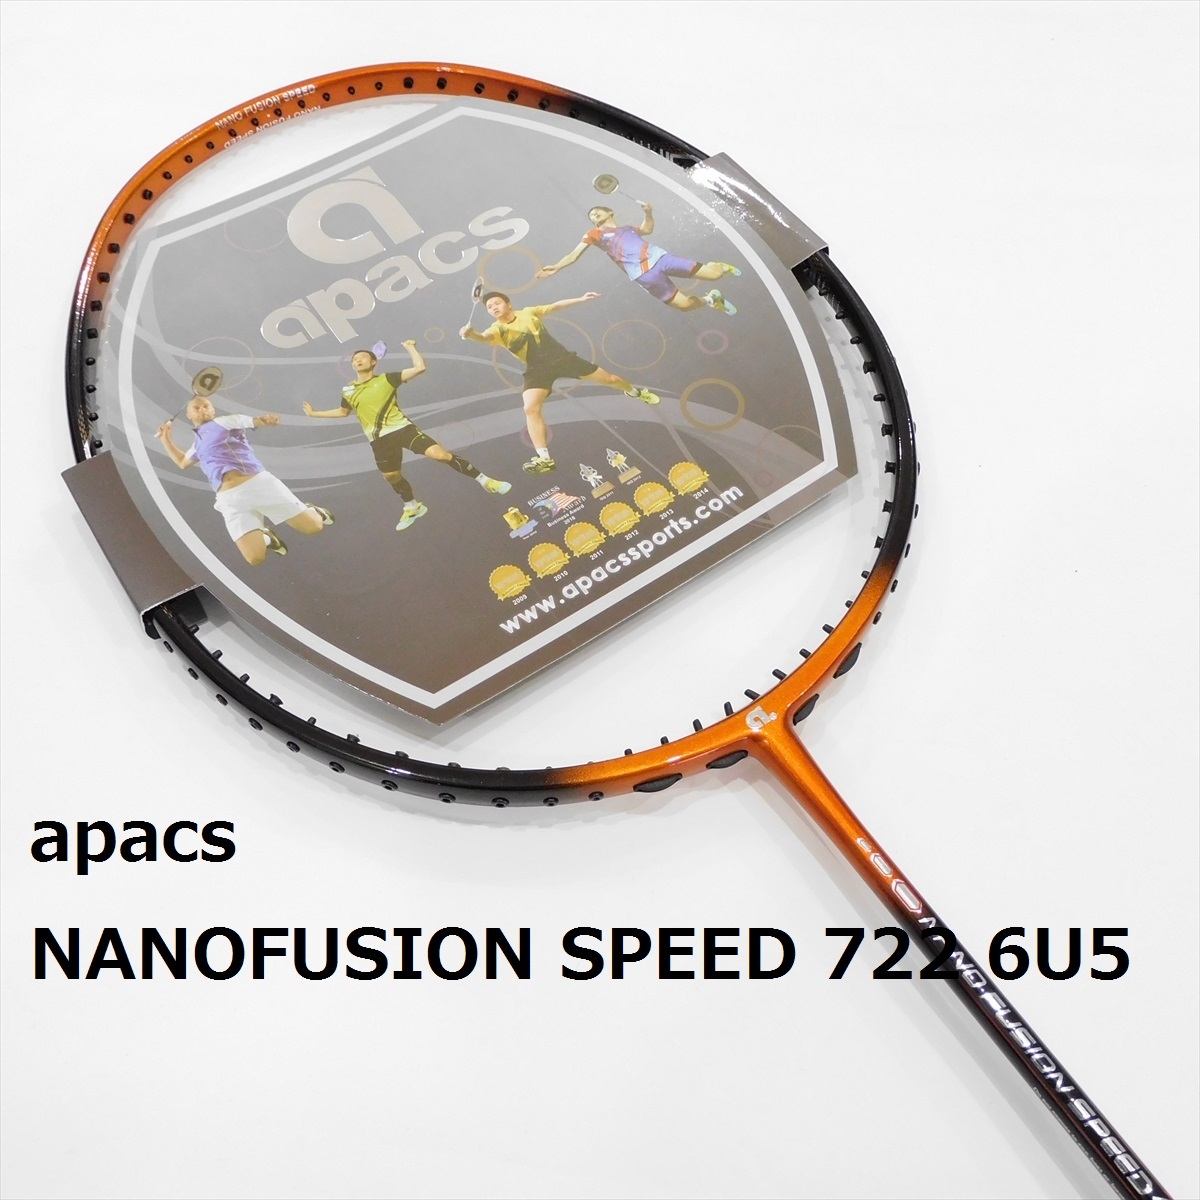 送料込/apacs/6U/軽量/ナノフュージョンスピード722/黒オレンジ/NANOFUSION SPEED  722/アストロクス33/00/55/66/ナノフレア400/アパックス